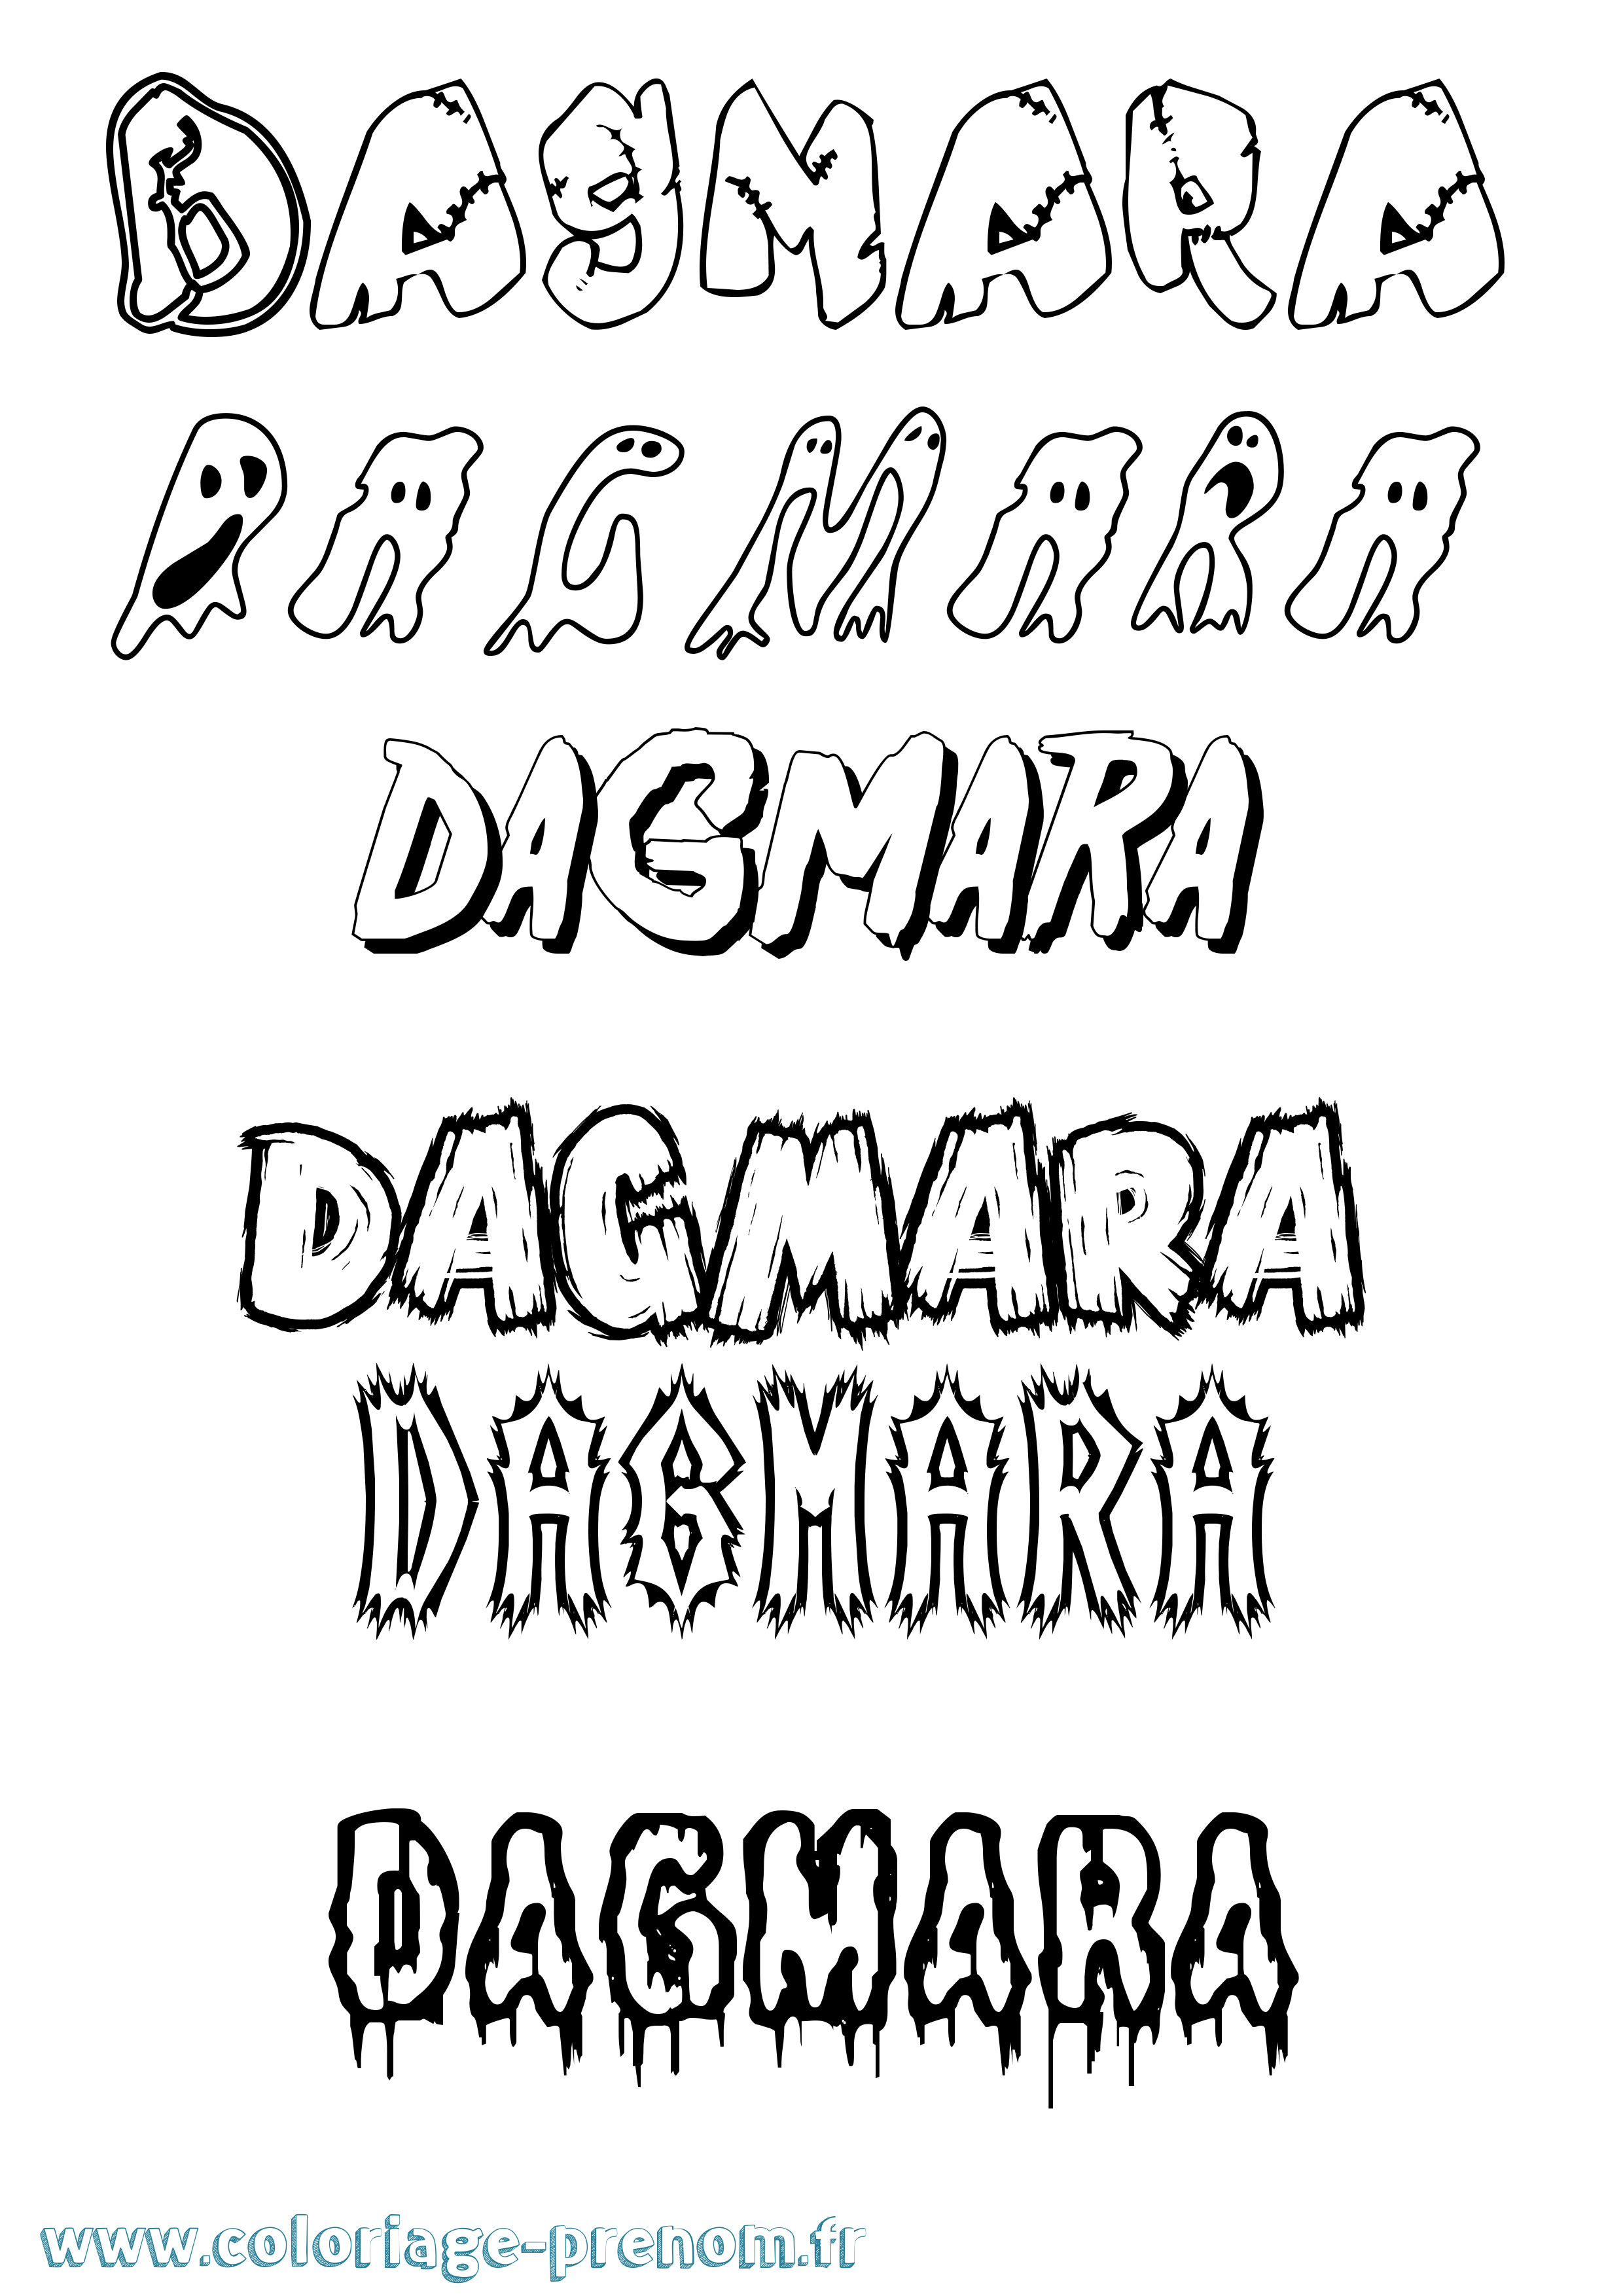 Coloriage prénom Dagmara Frisson